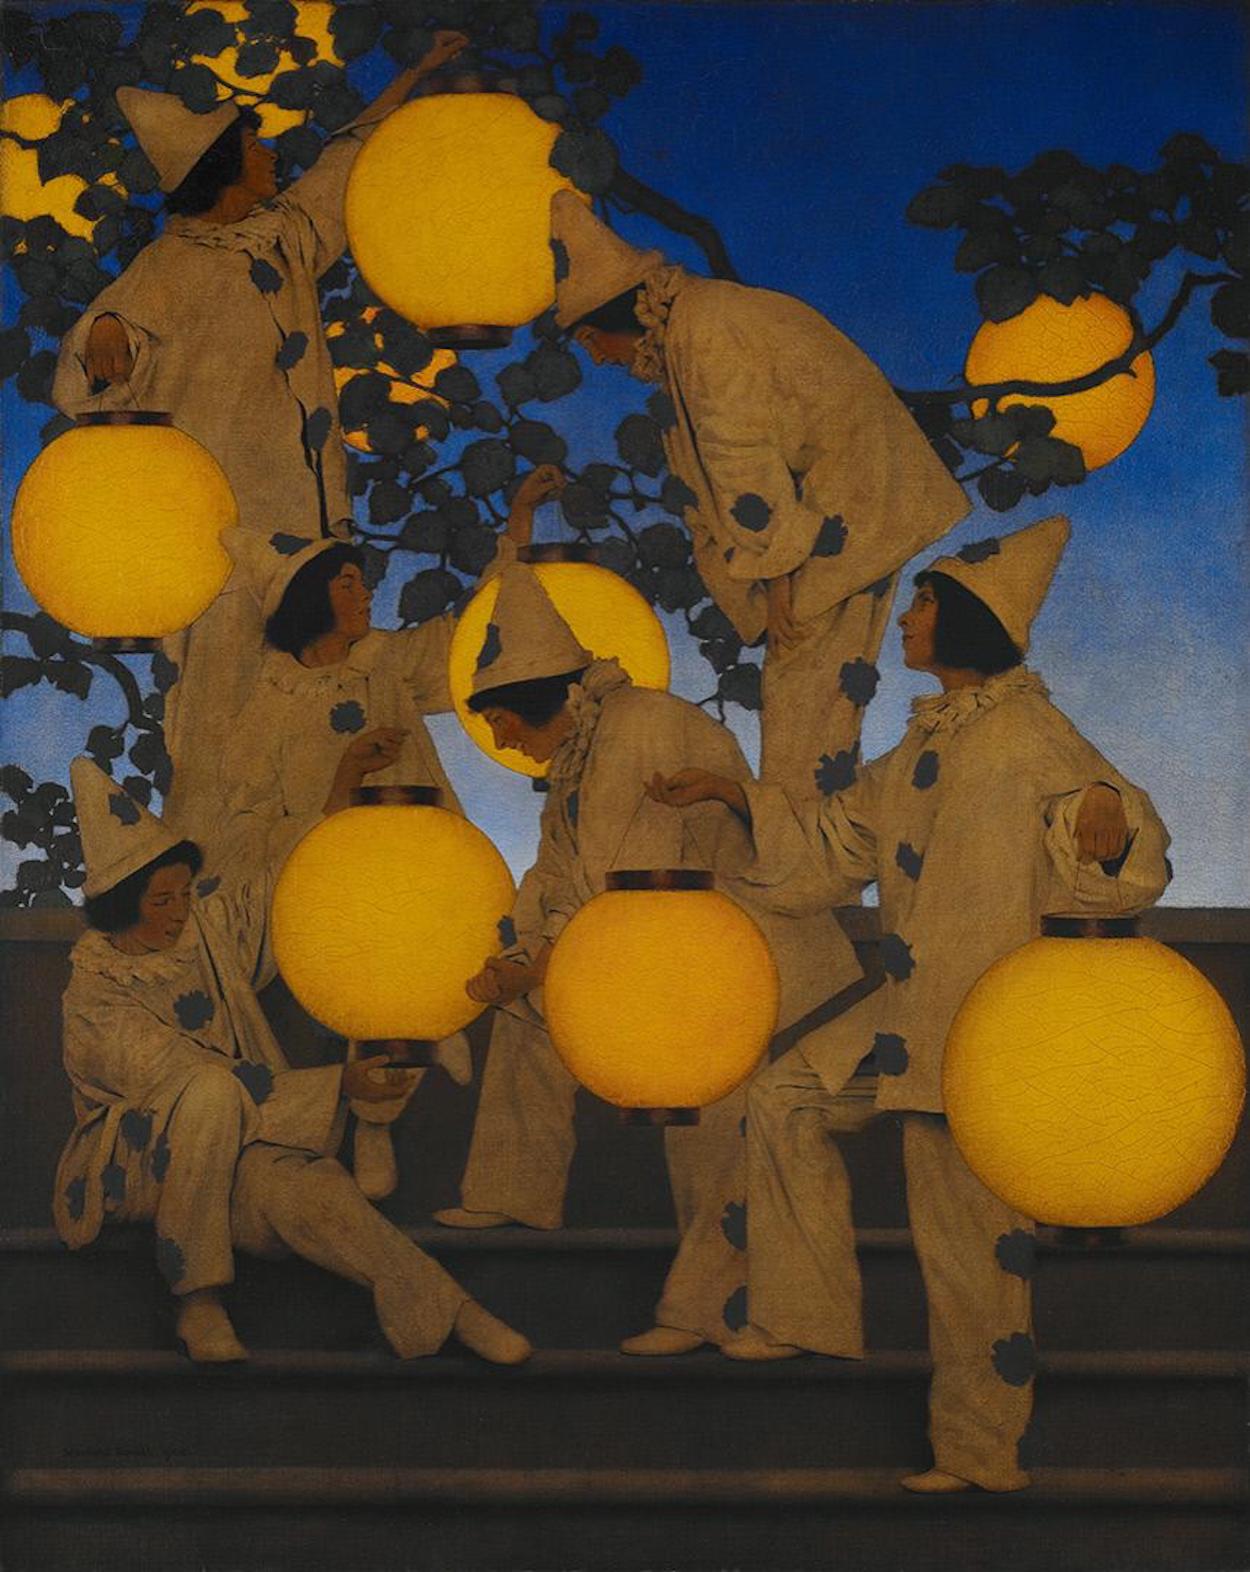 舉燈籠的人 by Maxfield Parrish - 1908年 - 101.6 × 81.3 厘米 